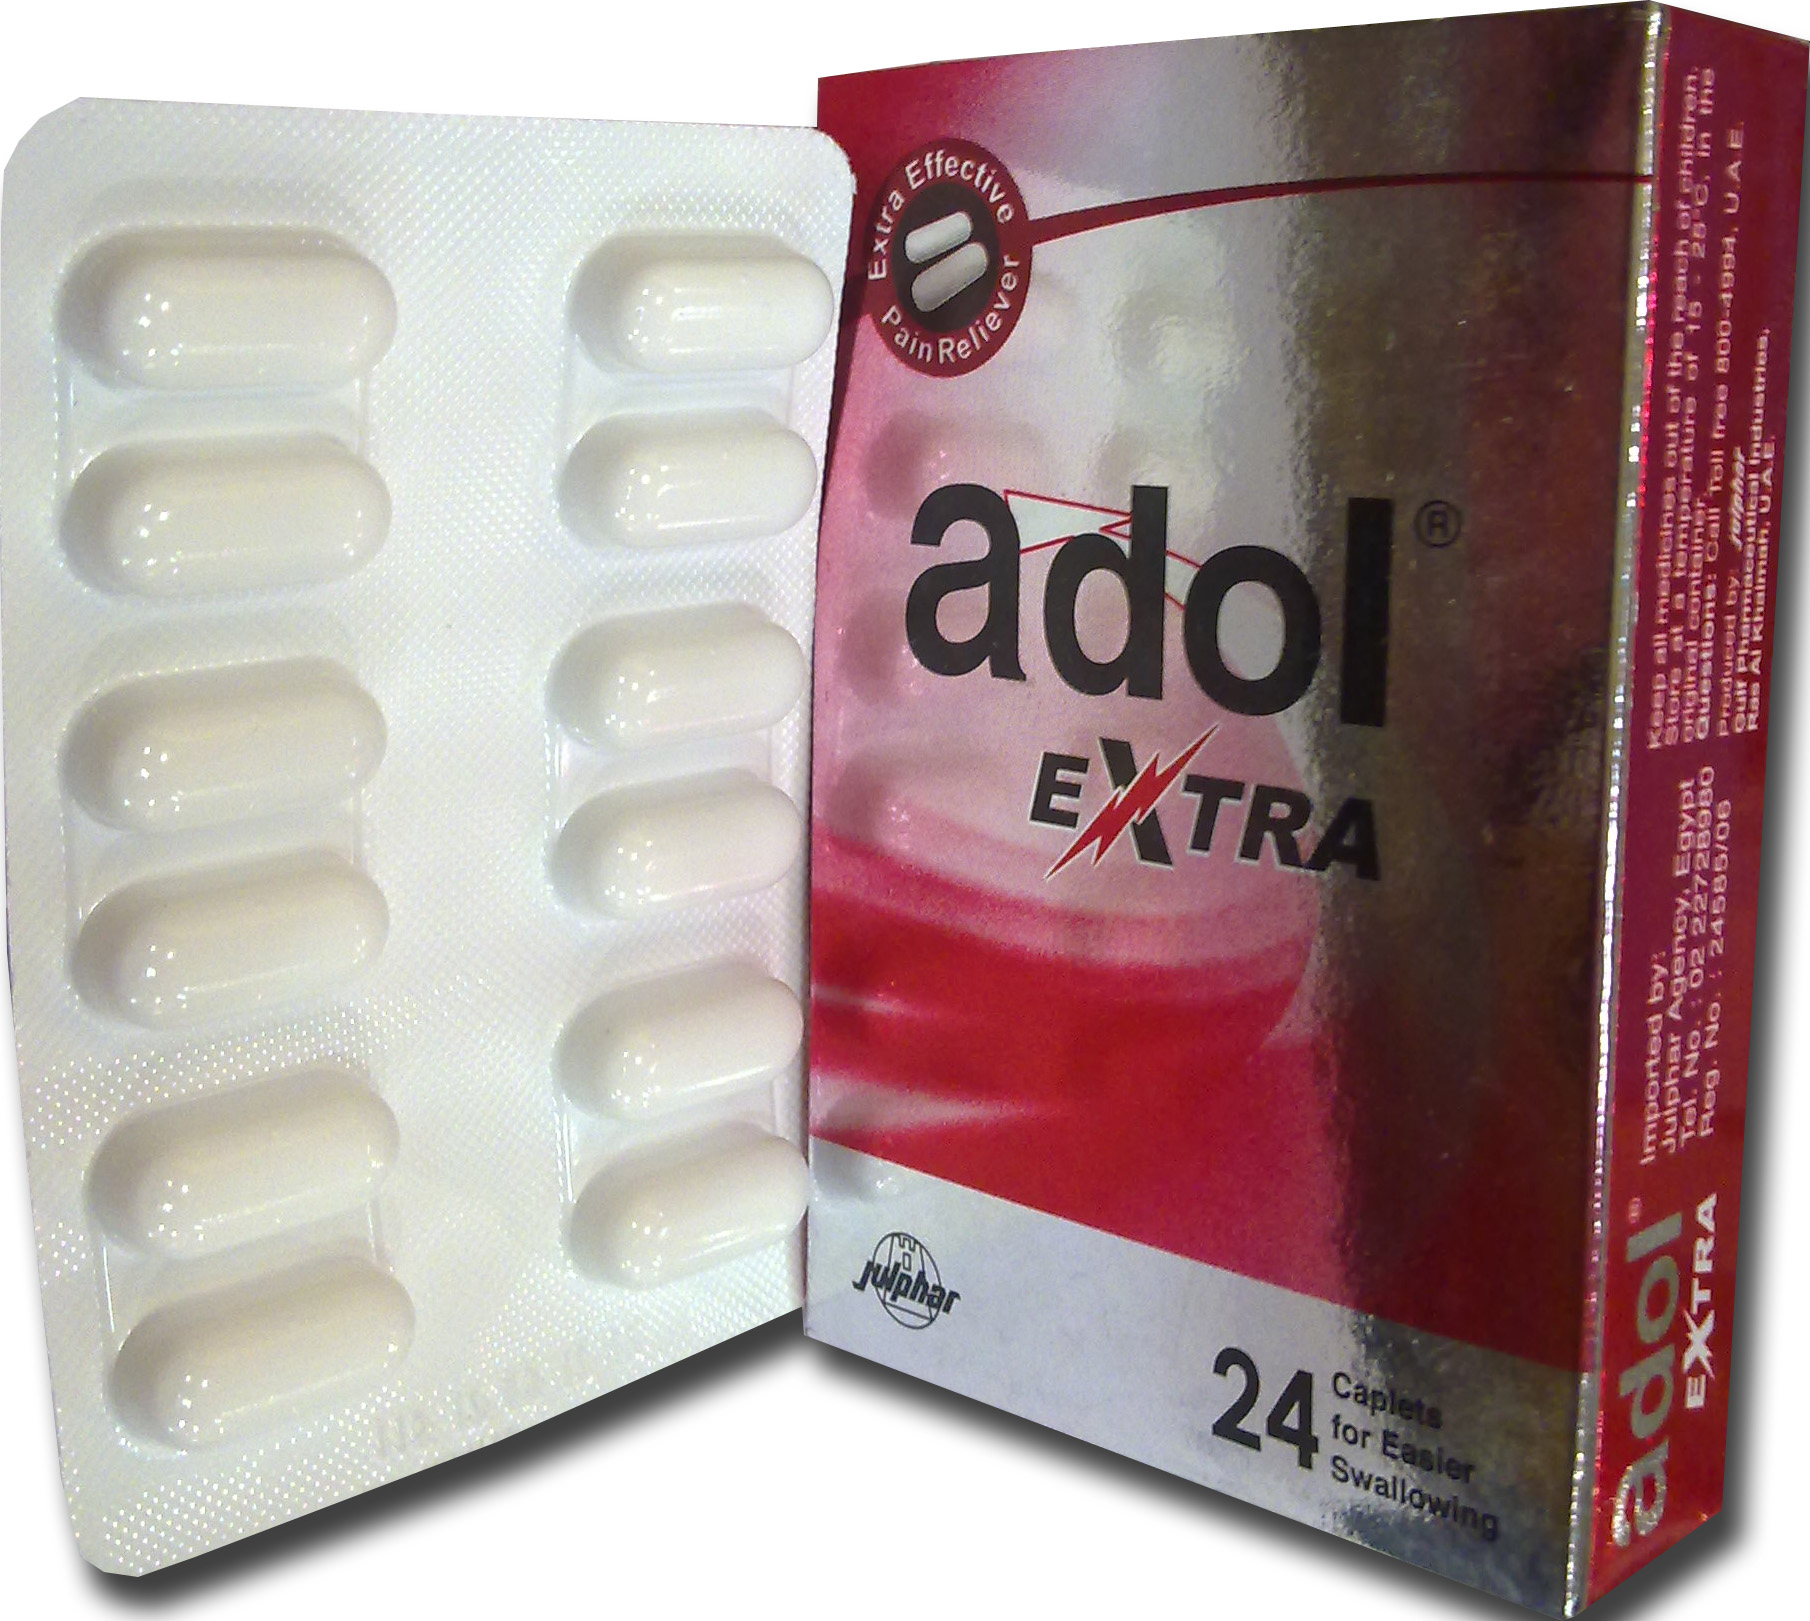 الفرق بين أدول الأحمر والأزرق| دواعي استعمال أدول اكسترا Adol Extra‎